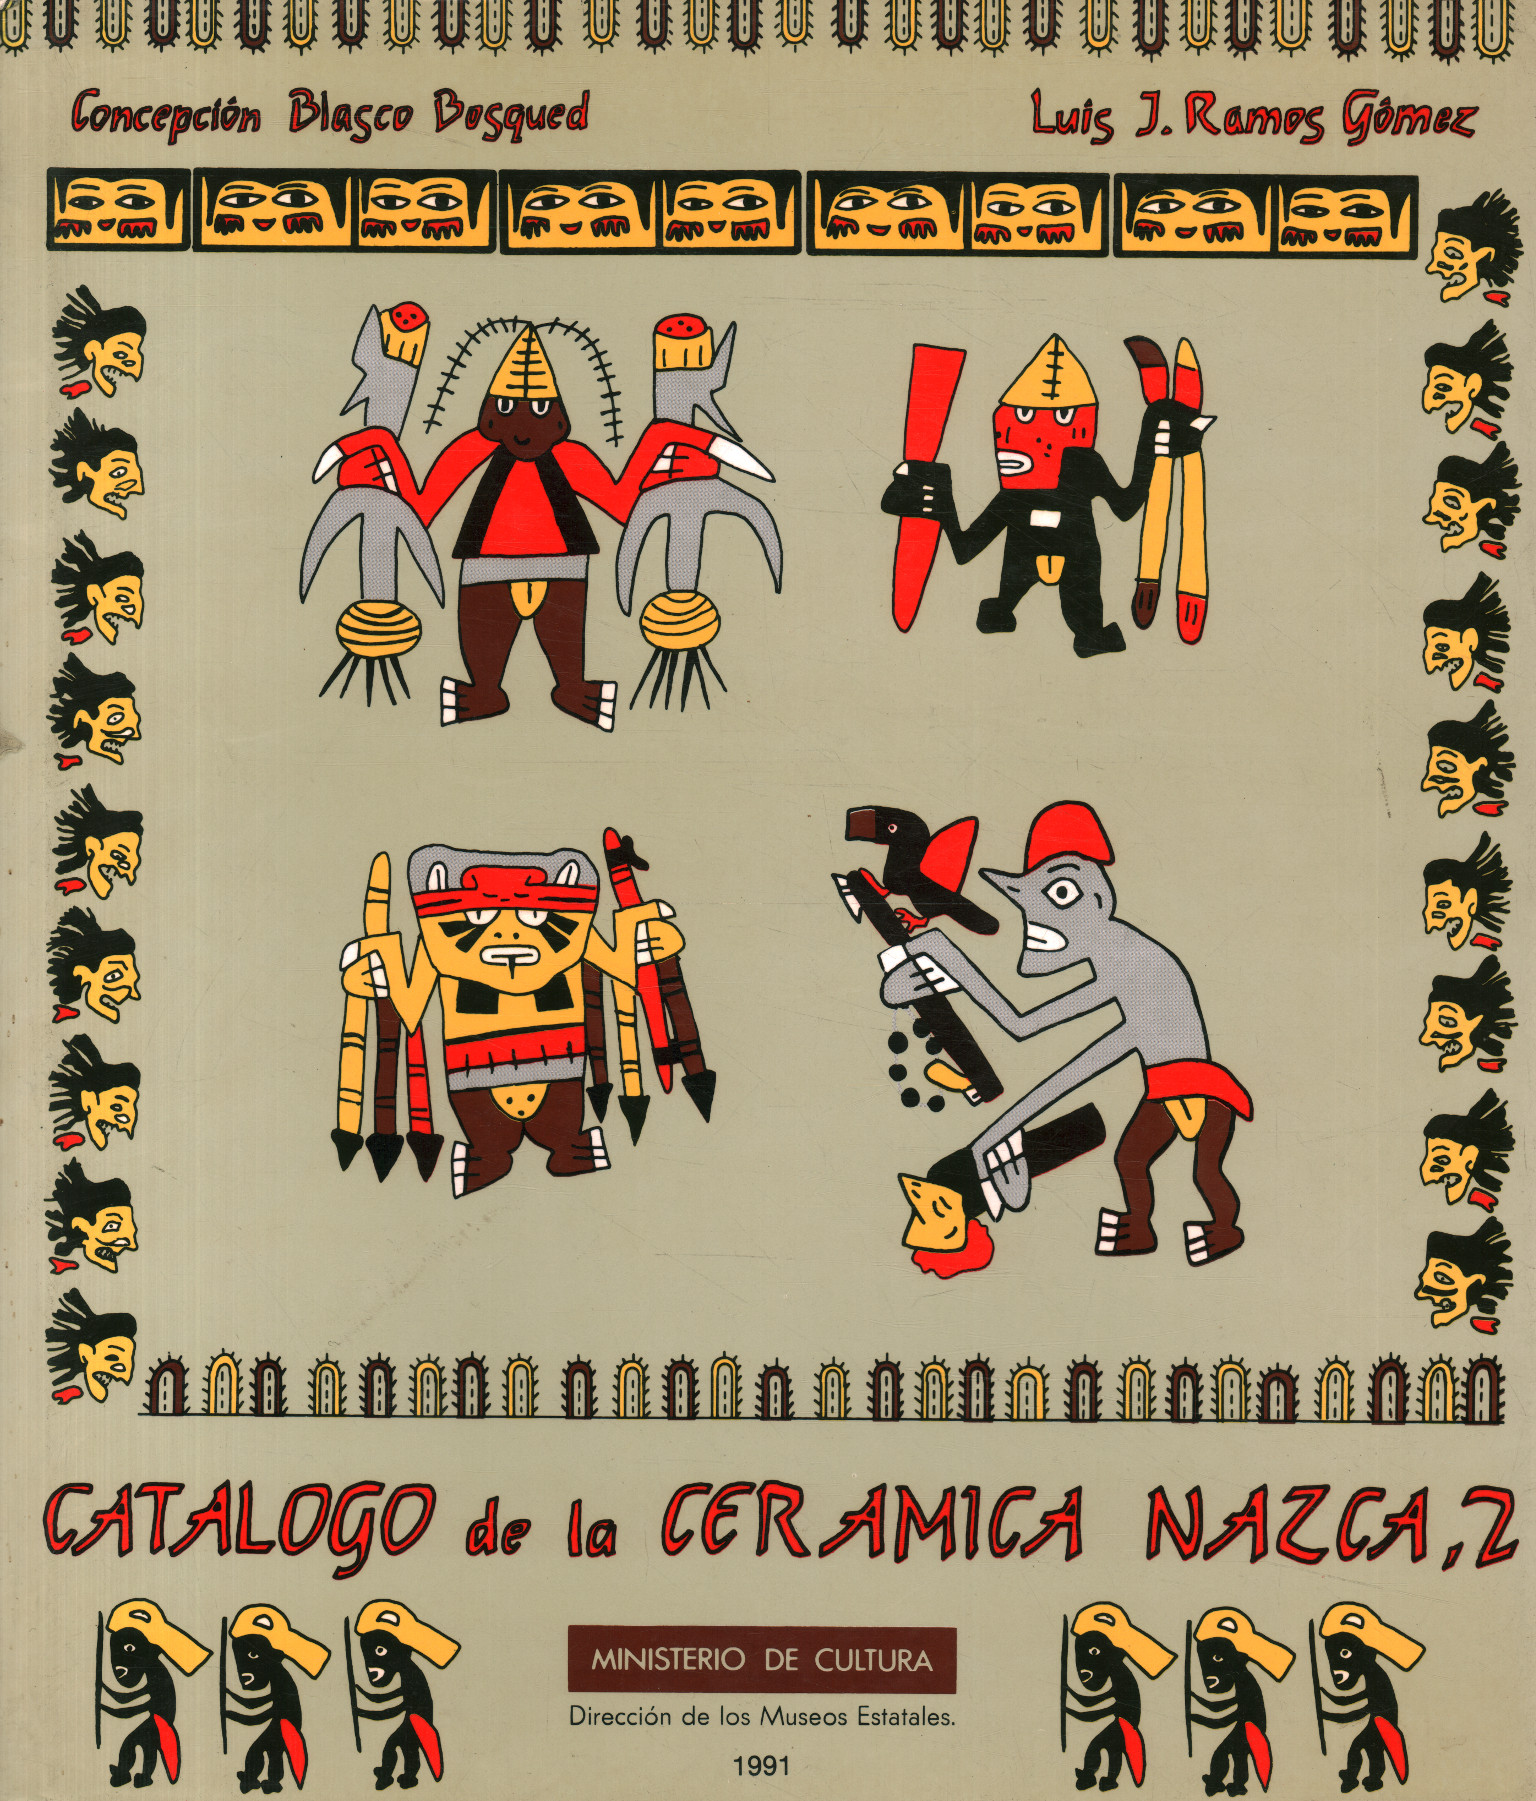 Catalog of Nazca ceramics